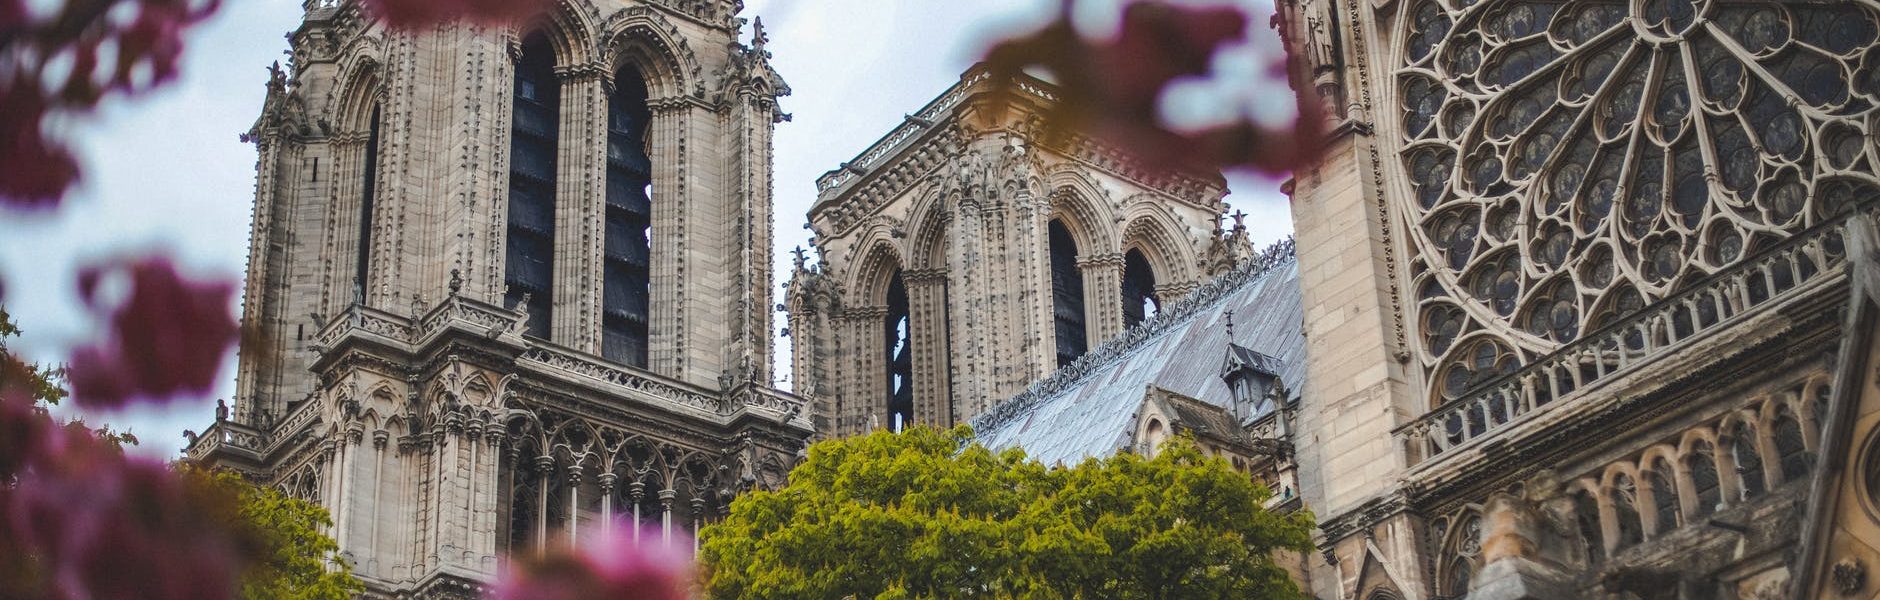 katedra Notre Dame – symbolika